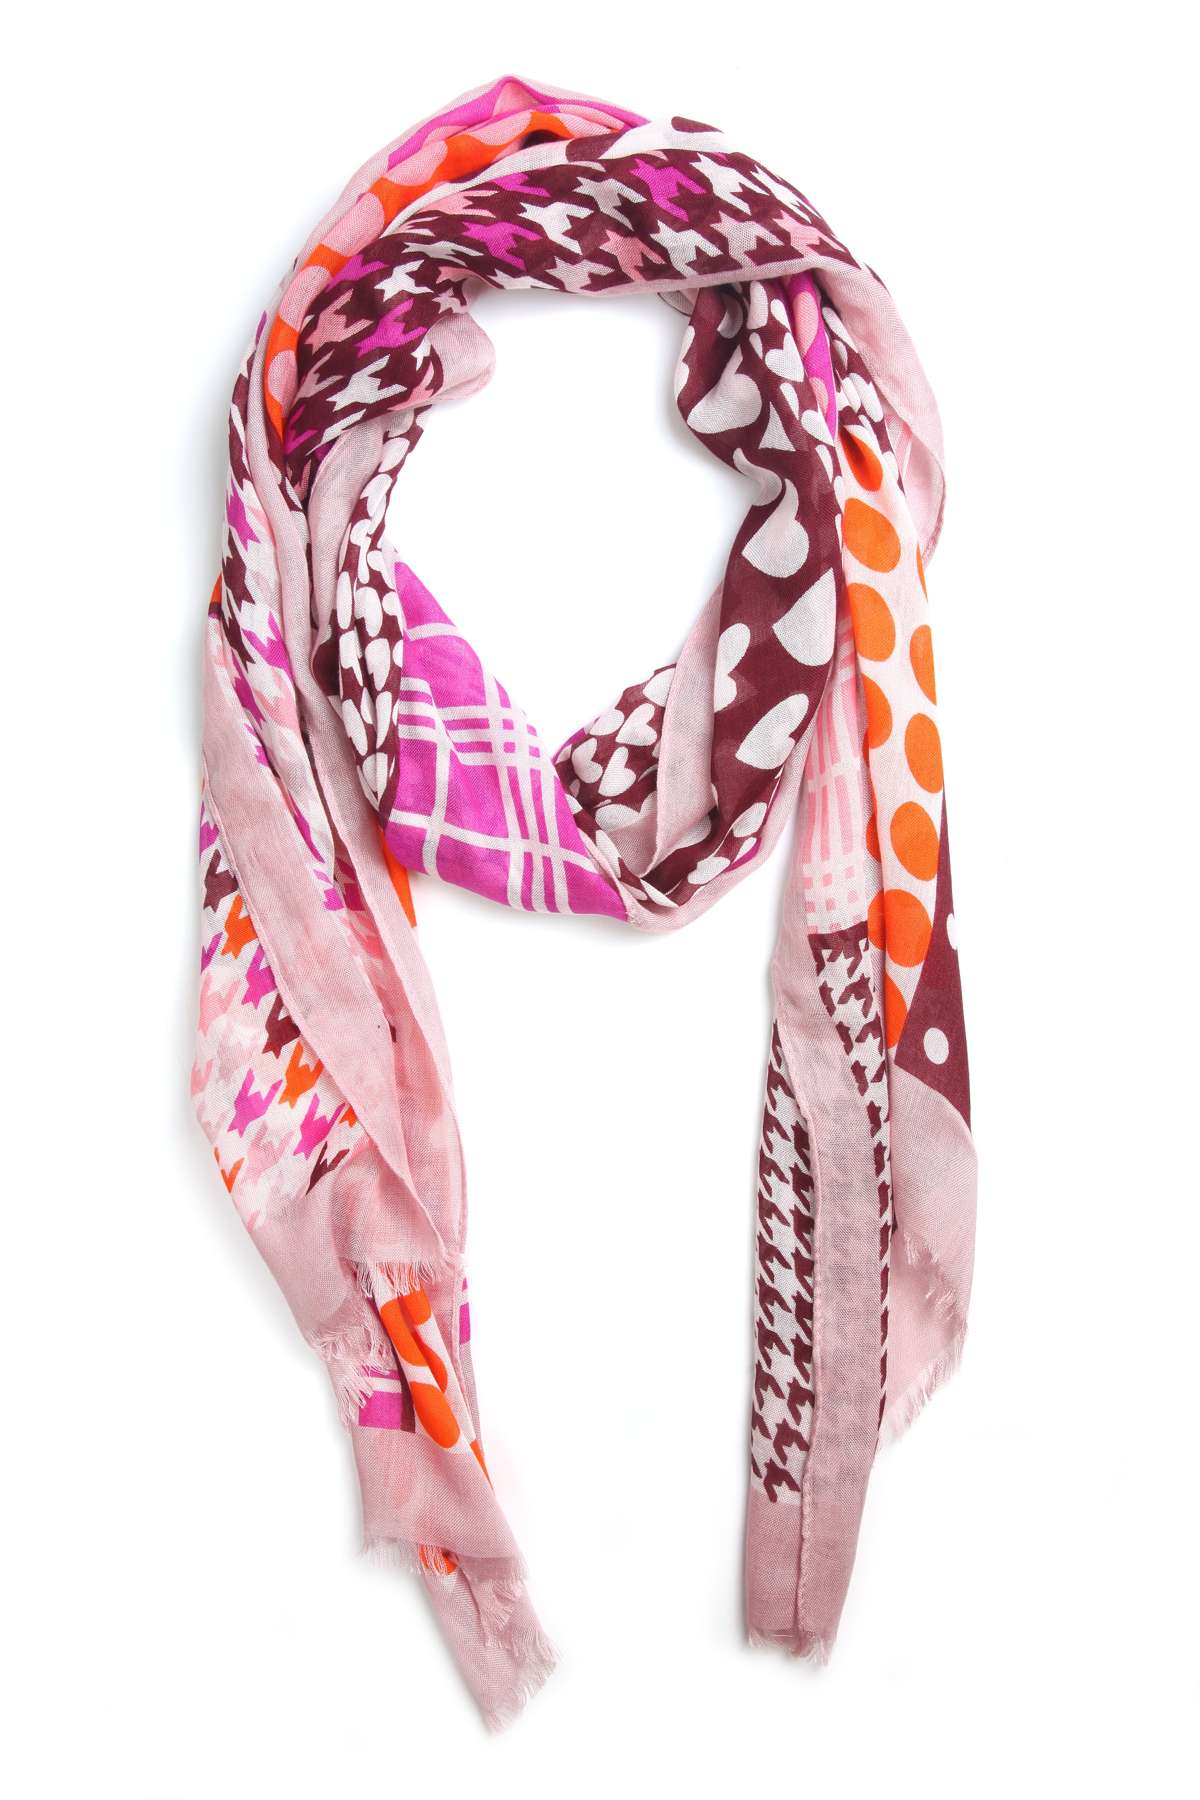 Модный шарф (1 штука), яркое сочетание цветов и форм.